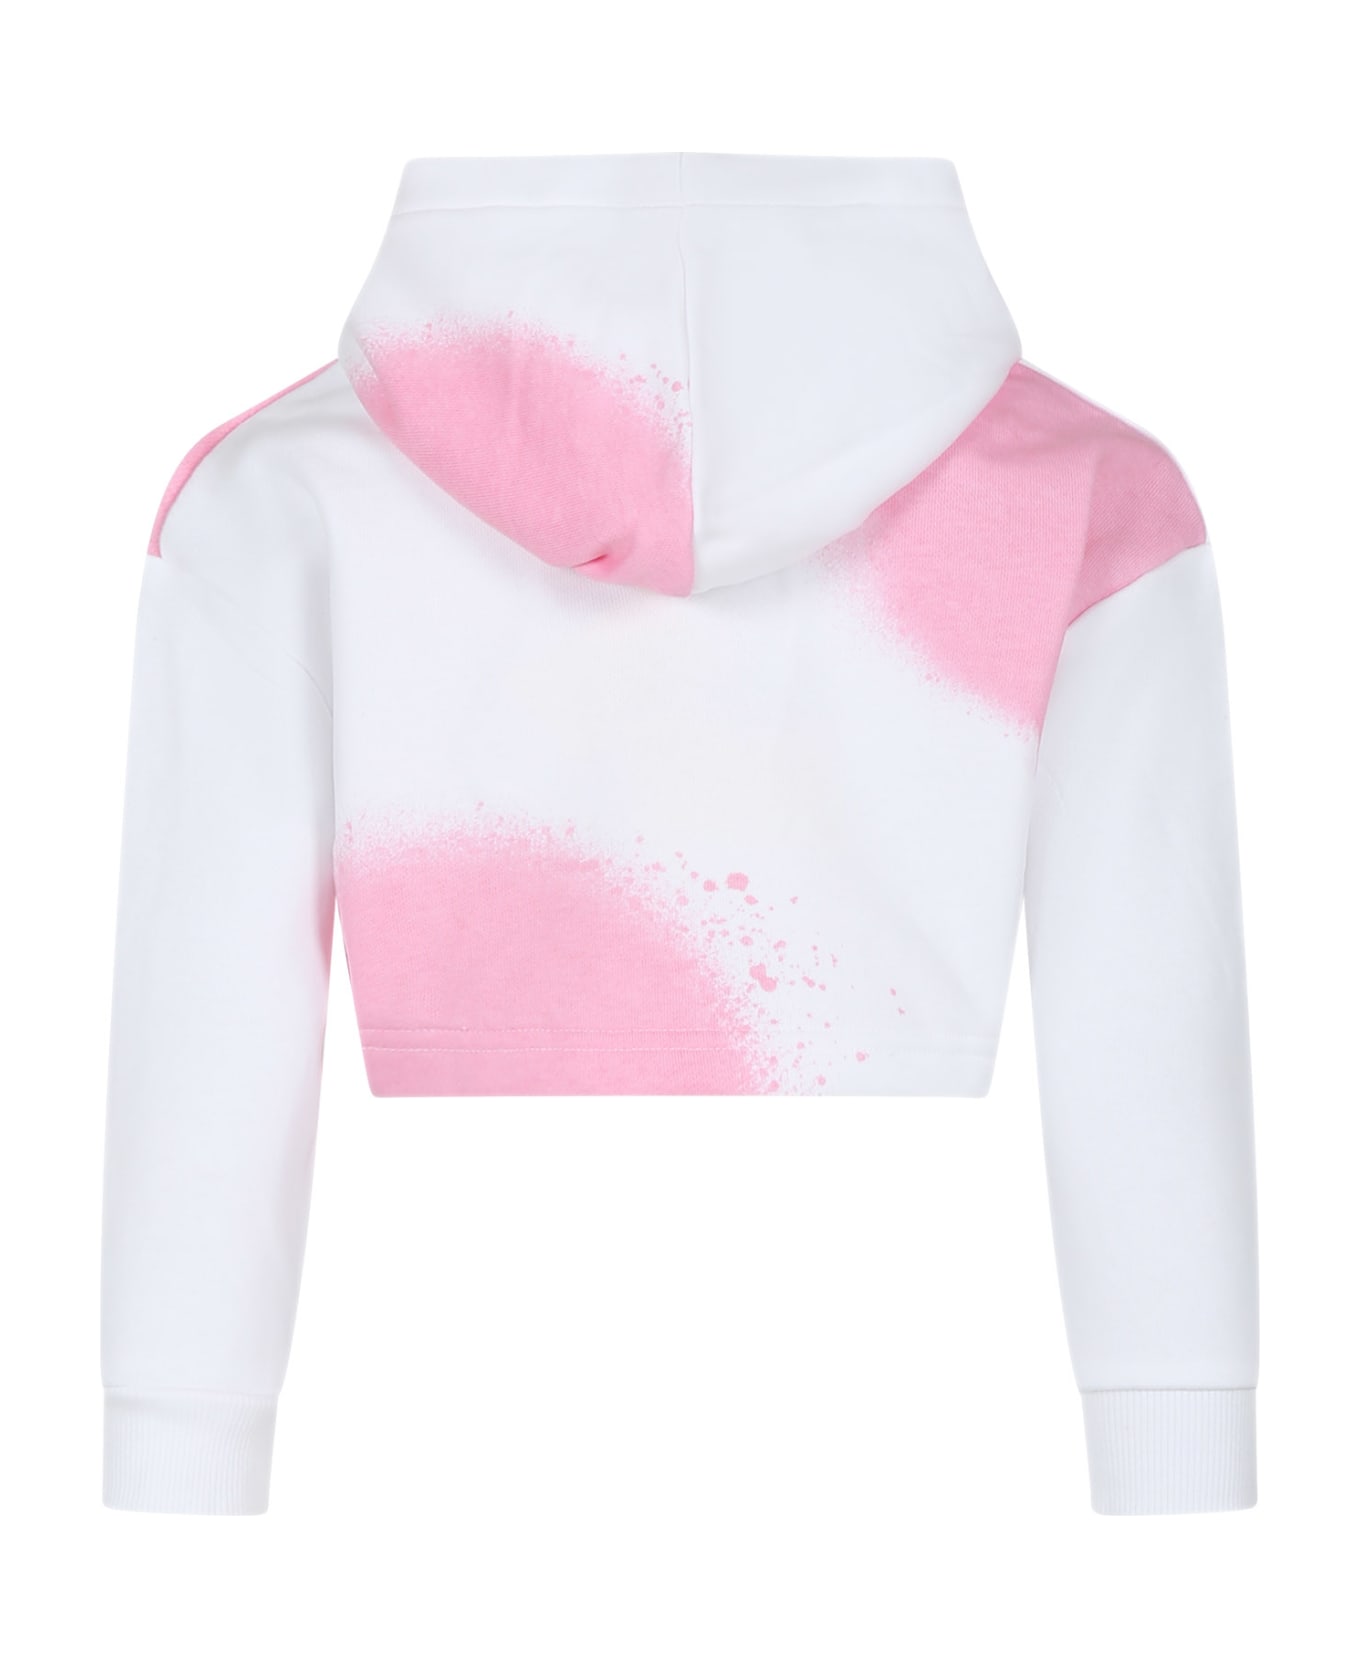 Marc Jacobs White Sweatshirt For Girl With Logo - White ニットウェア＆スウェットシャツ